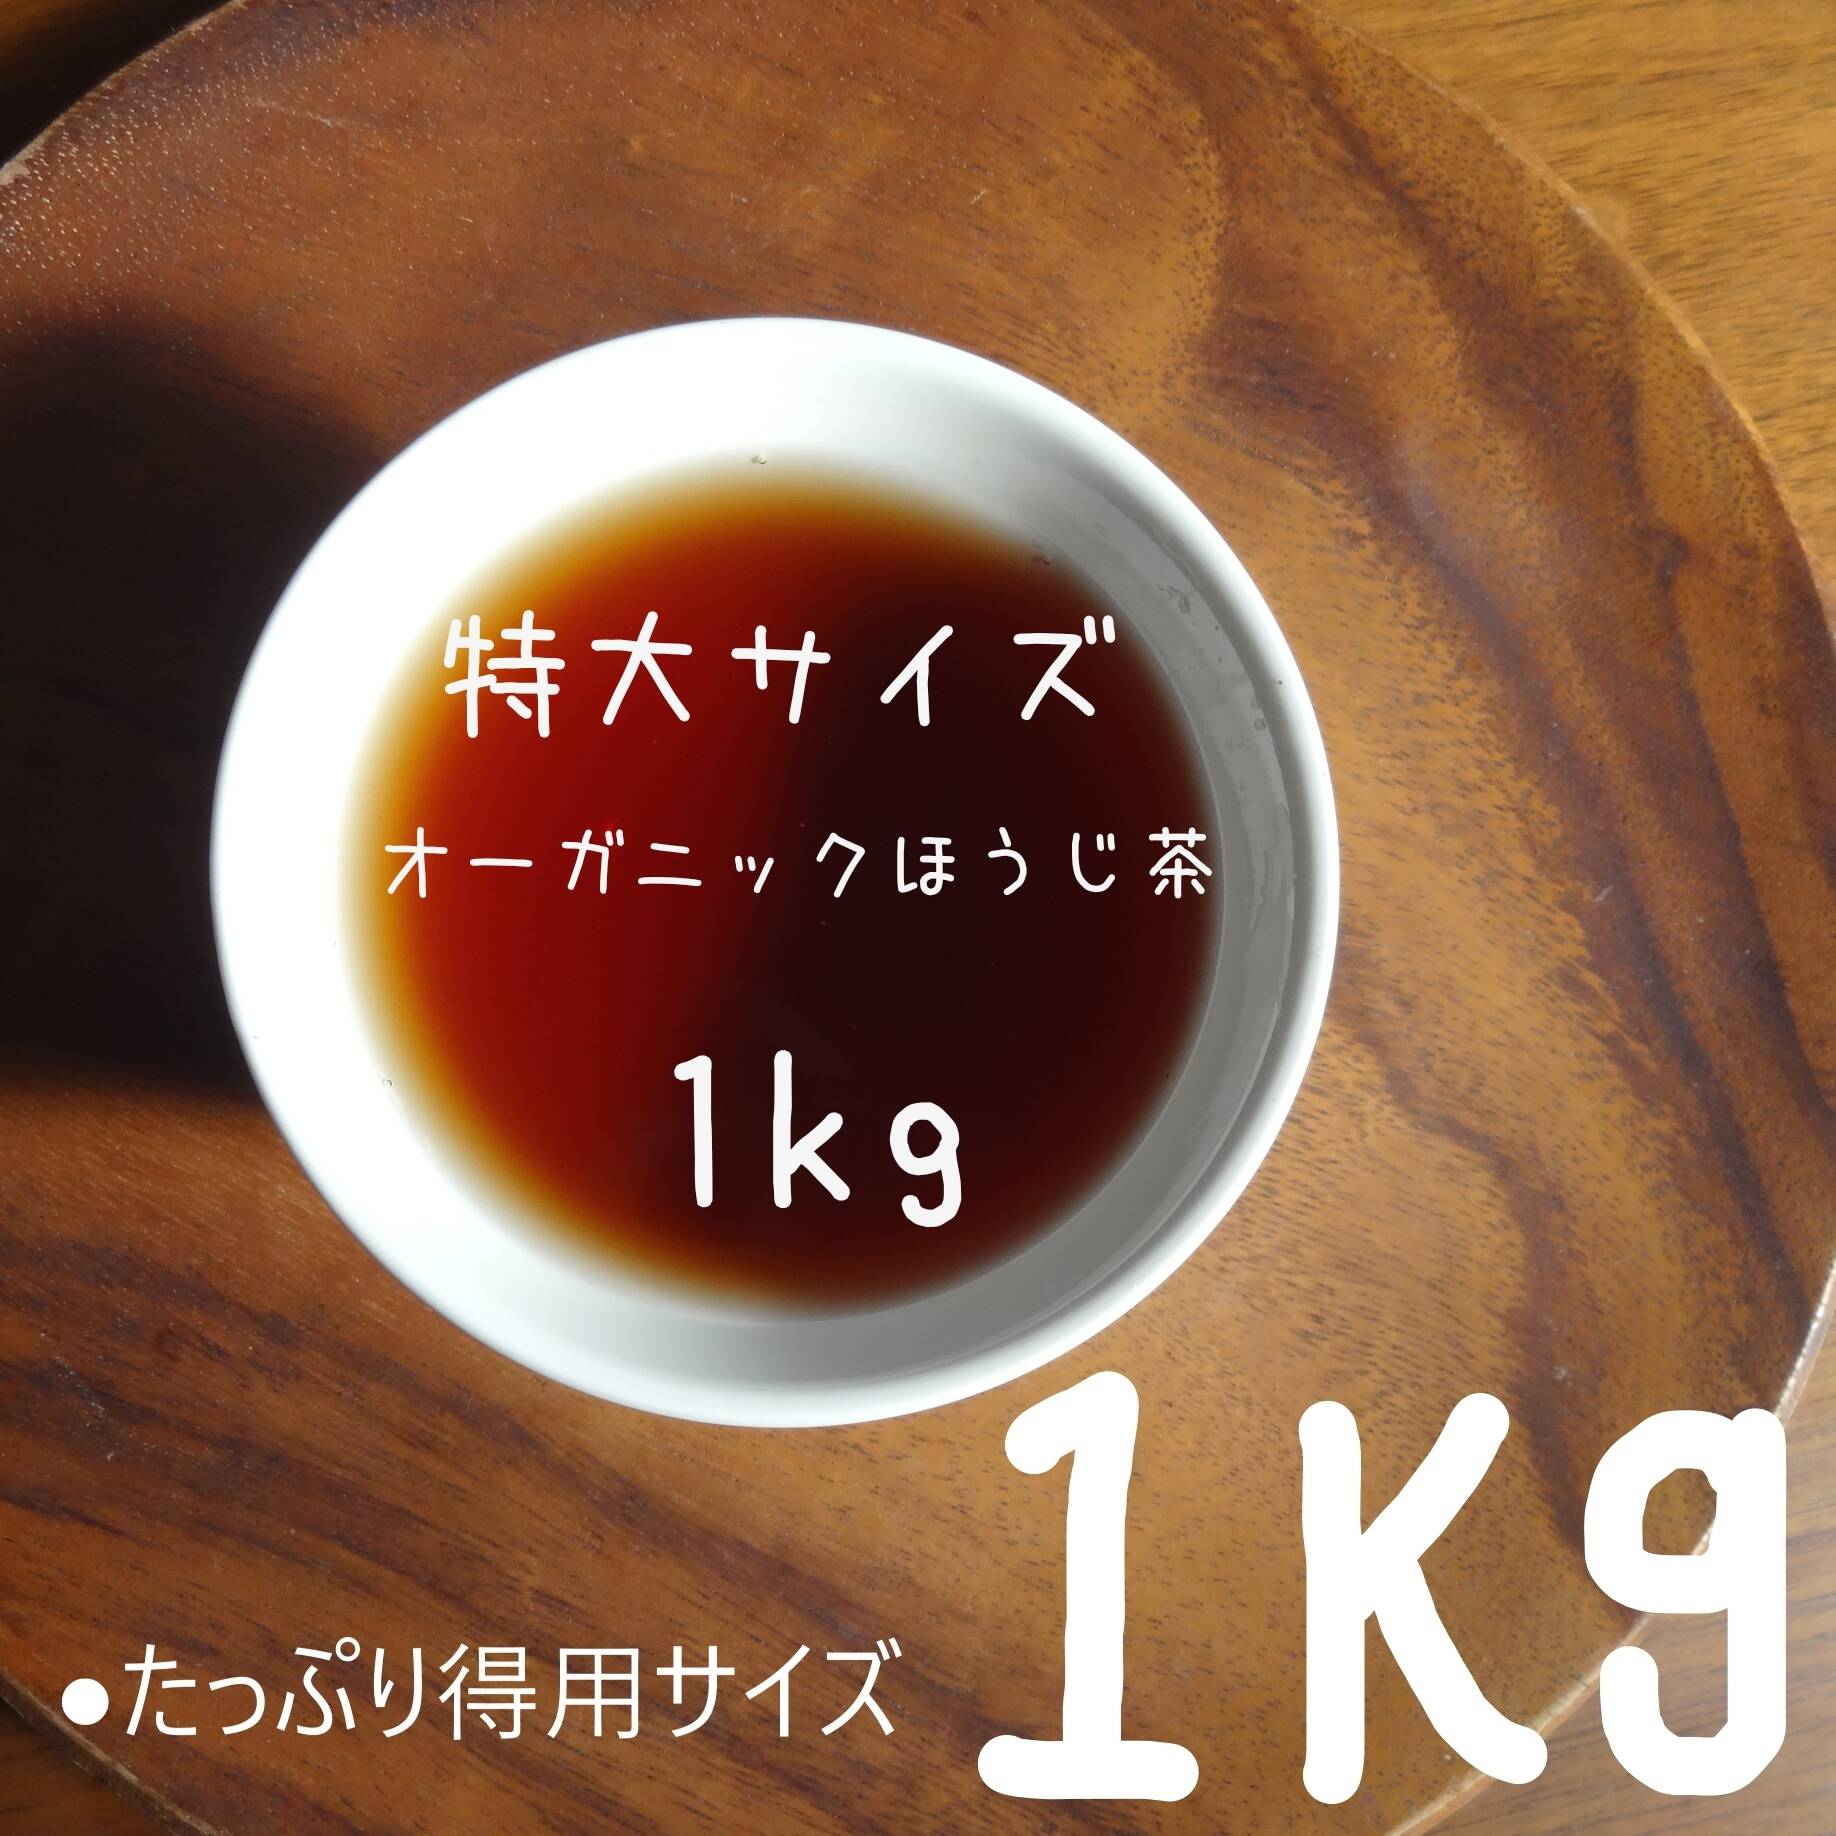 SALE／103%OFF】 プーアル茶オリジナルパック1kg袋